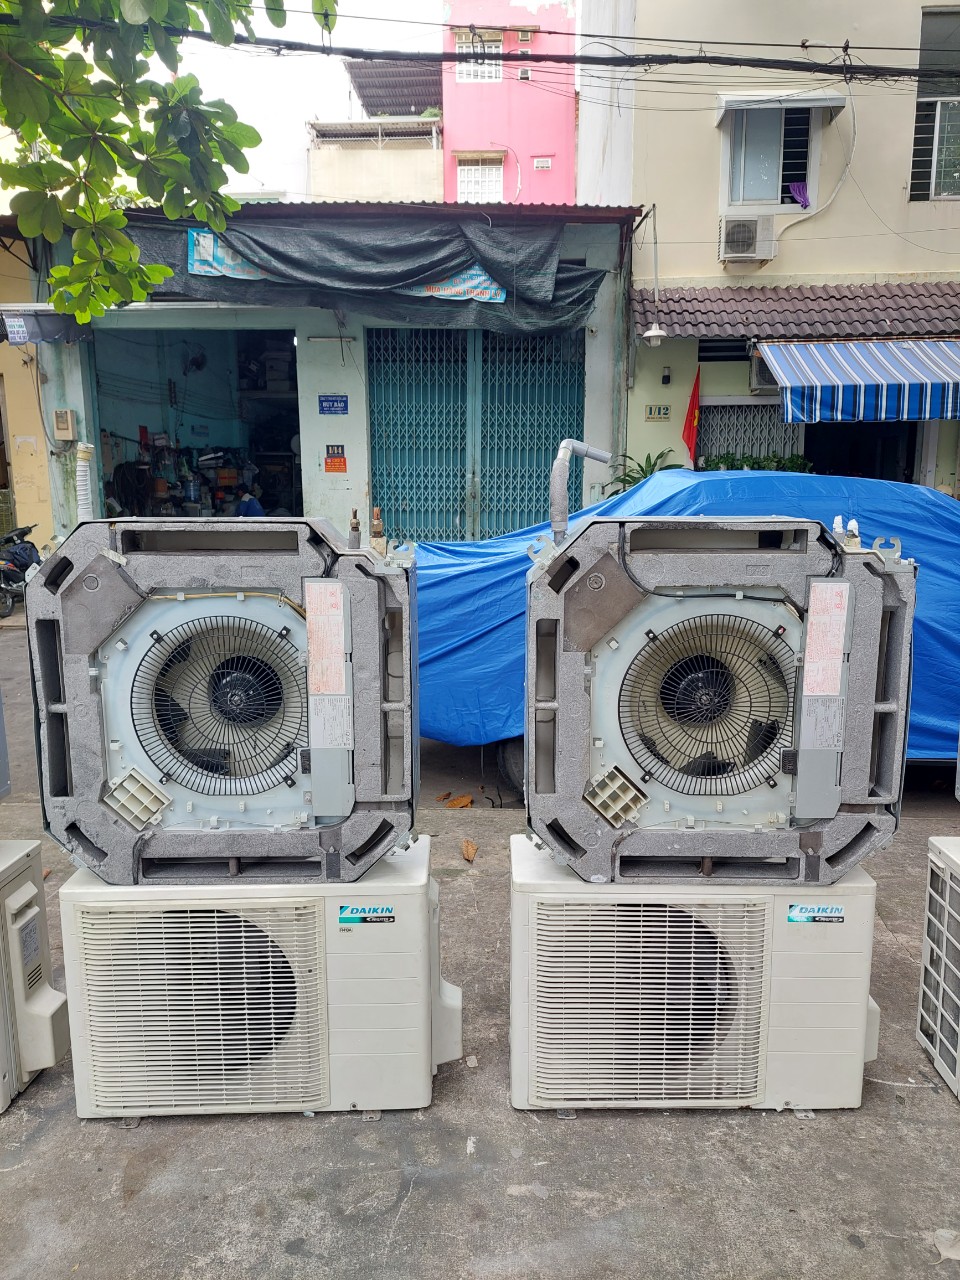 Gọi ngay dịch vụ tháo lắp điều hòa của Mua bán máy lạnh cũ chính hãng quận 2  Điện lạnh Huy Bảo để nhận giá hỗ trợ tốt nhất✔️ 0907 243 680 Mr.Bảo